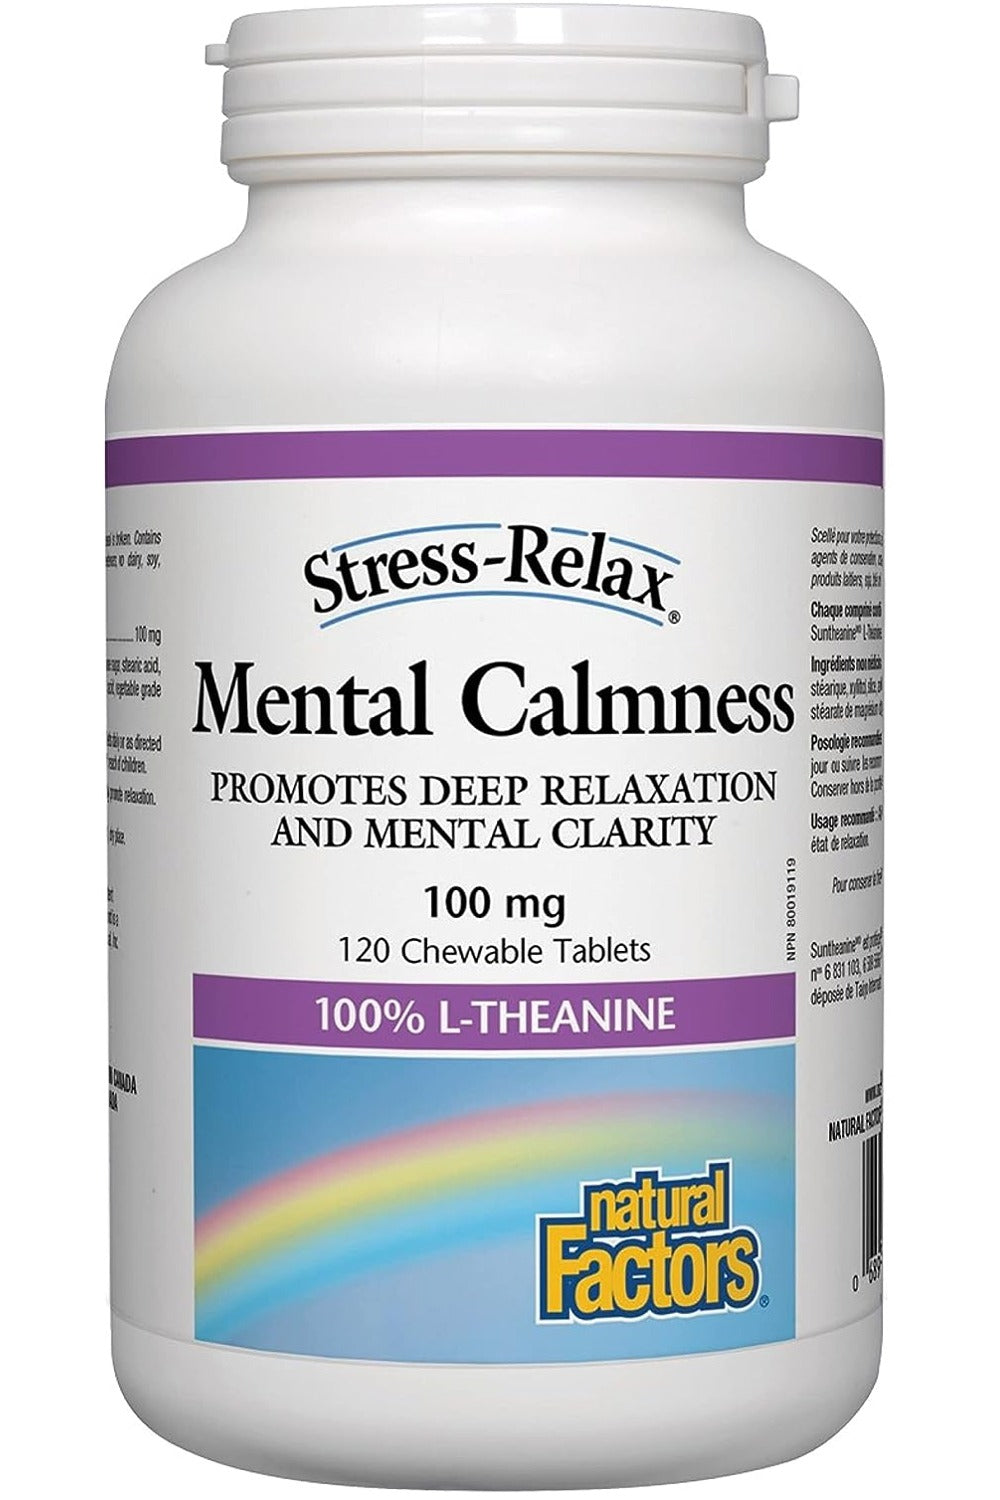 NATURAL FACTORS STRESS RELAX Mental Calmness (100 mg - 120 chewables)